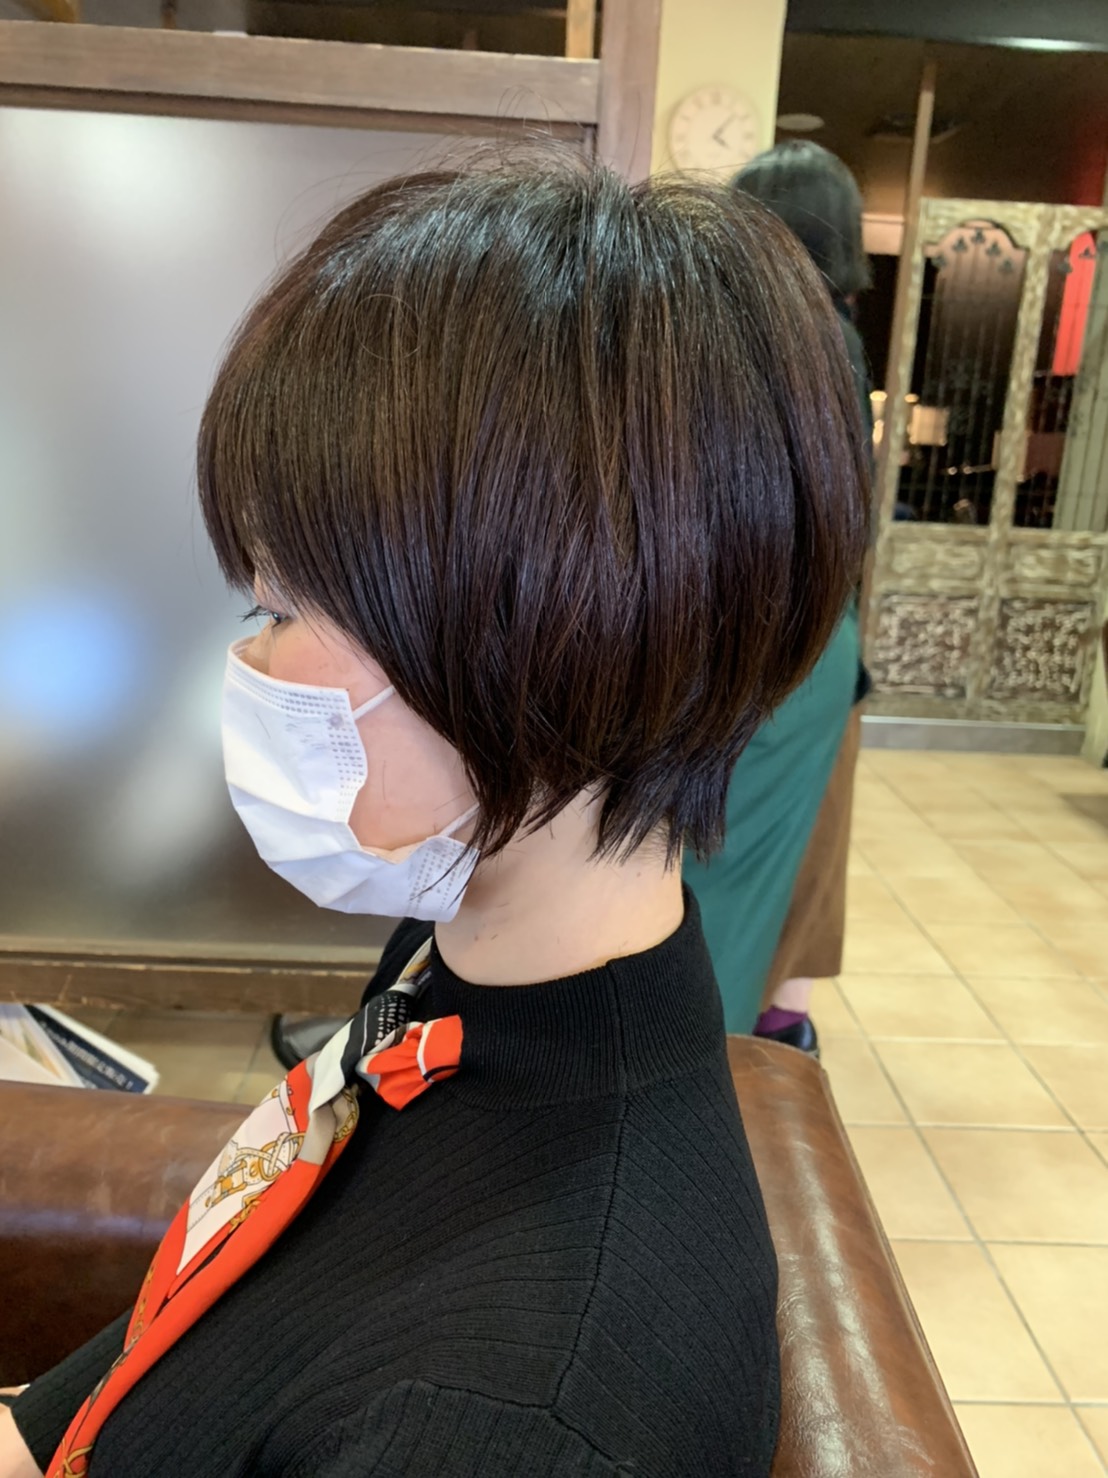 もう失敗しない 奈良の美容院でショートヘアの失敗を直します 奈良 京都 大阪の美容室 ハピネス